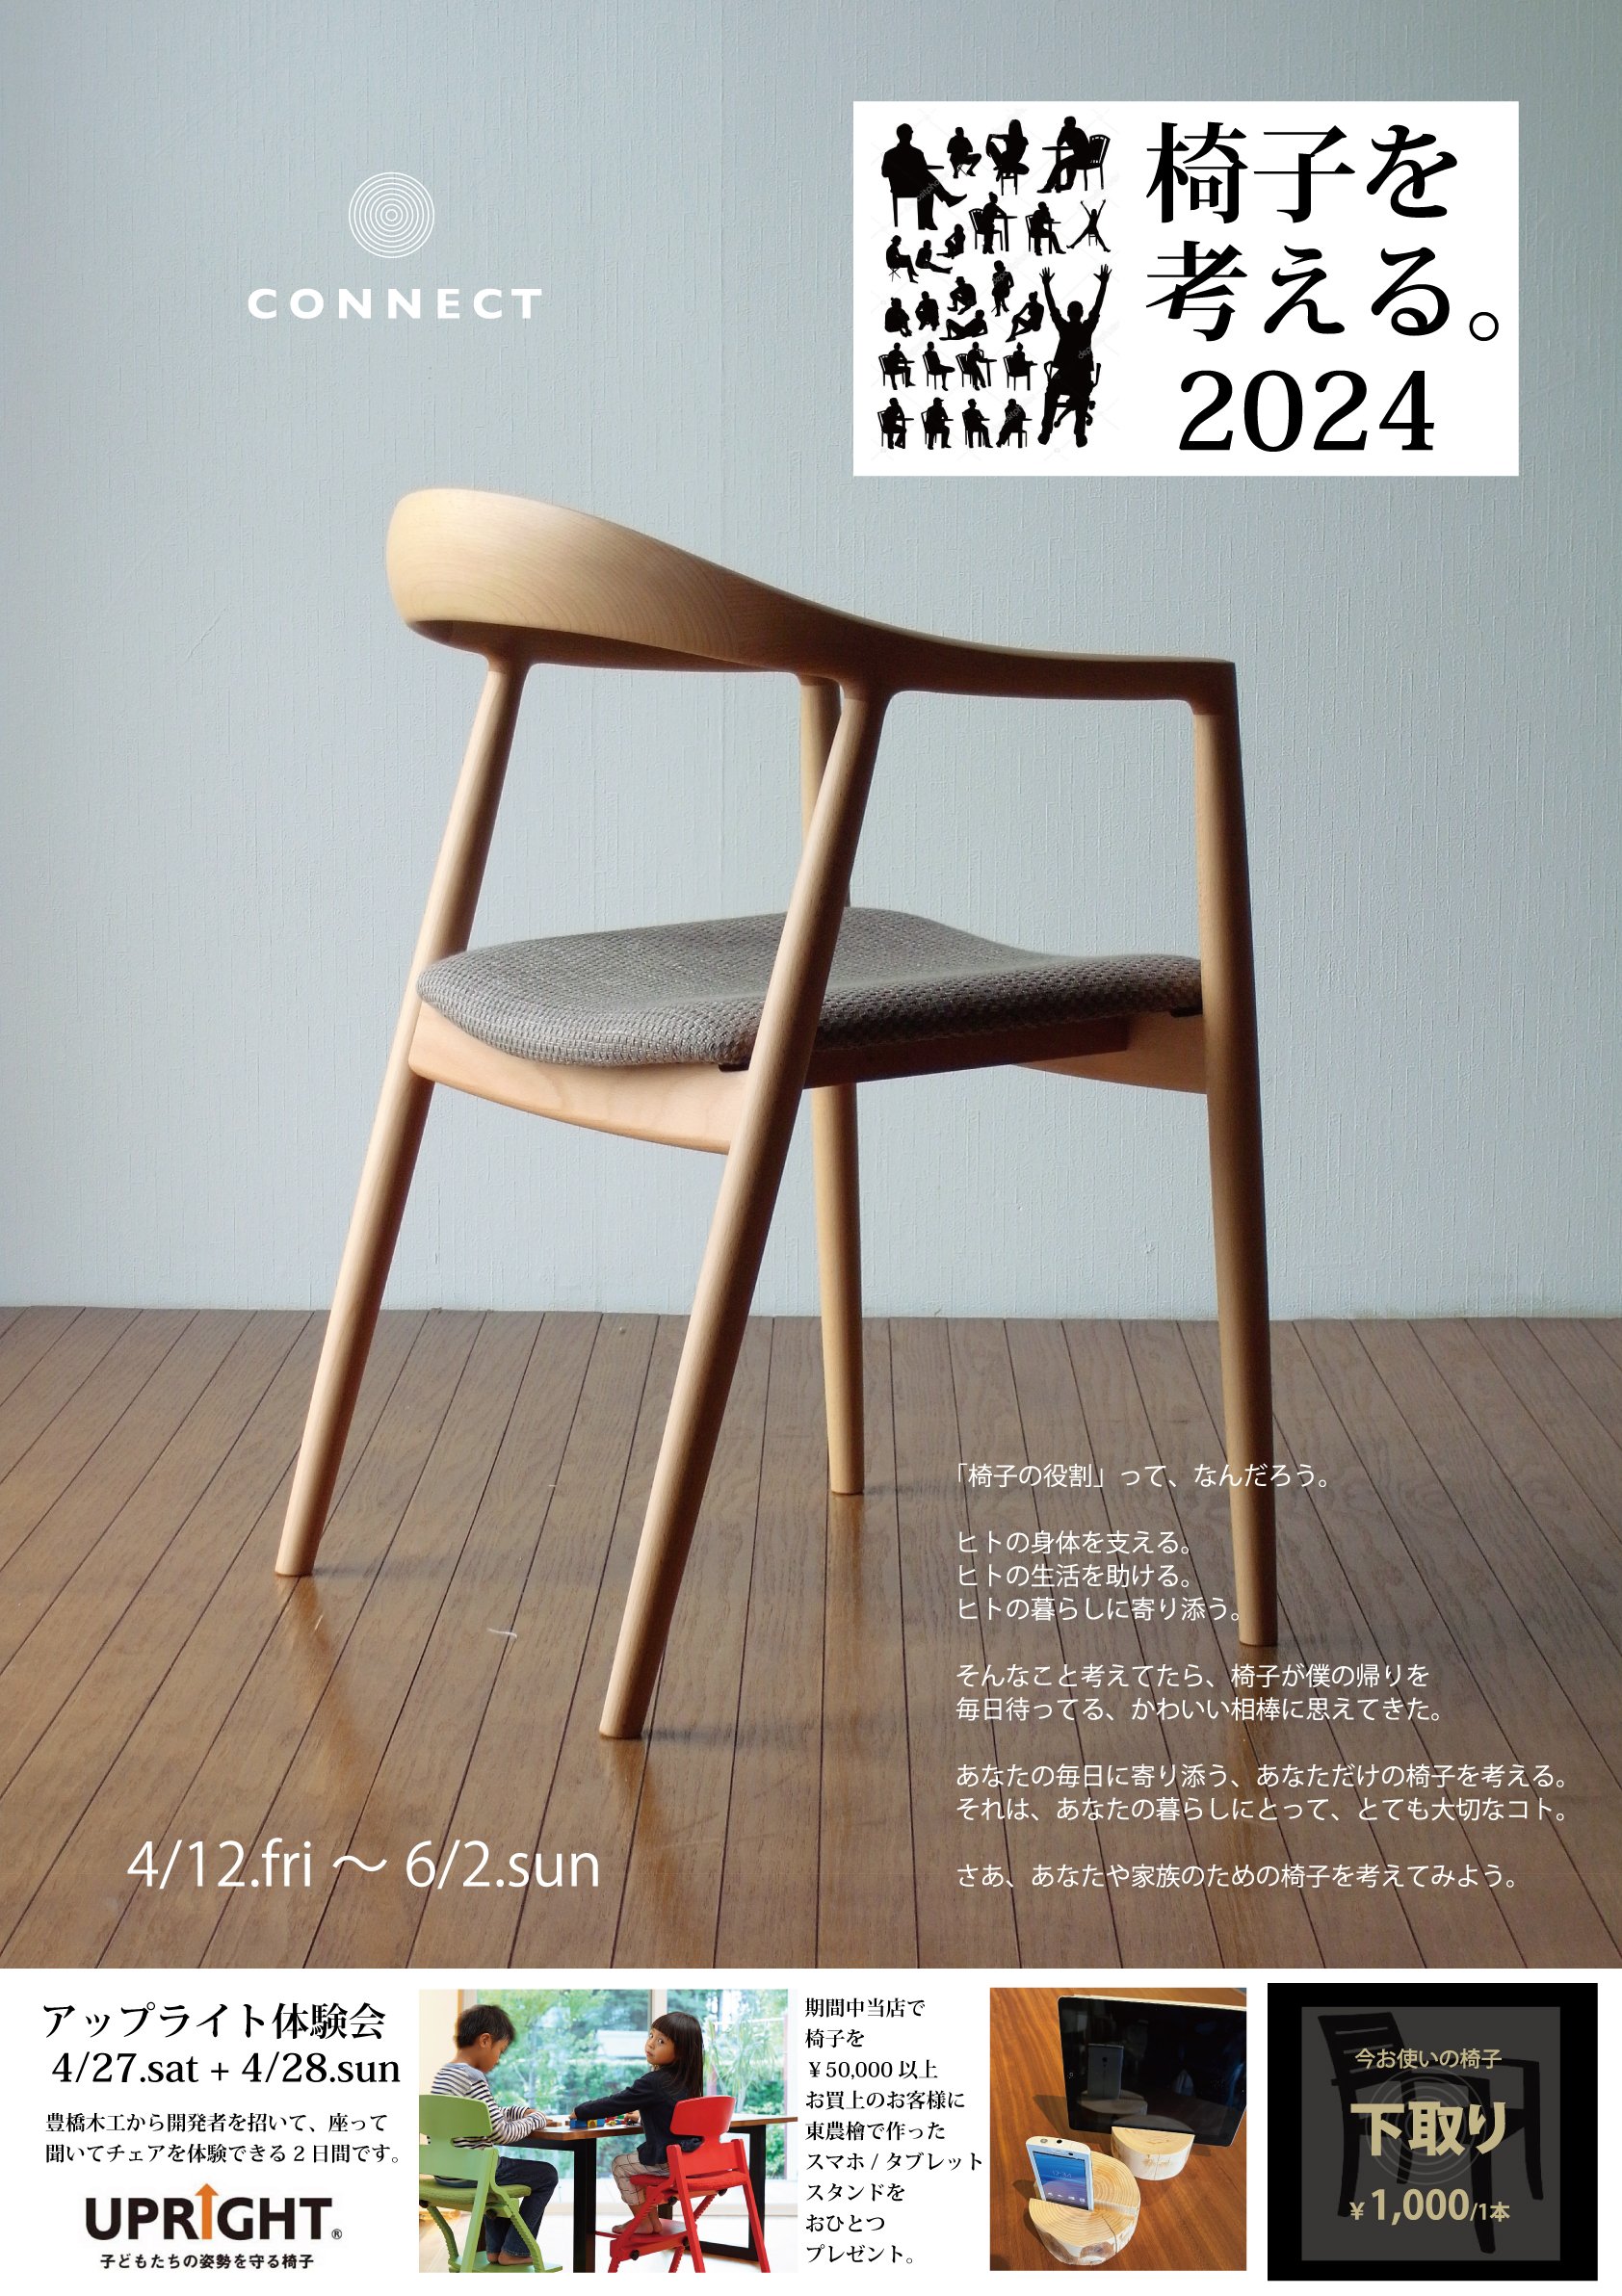 「2024・椅子を考える」4/12.fry～6/2.sun